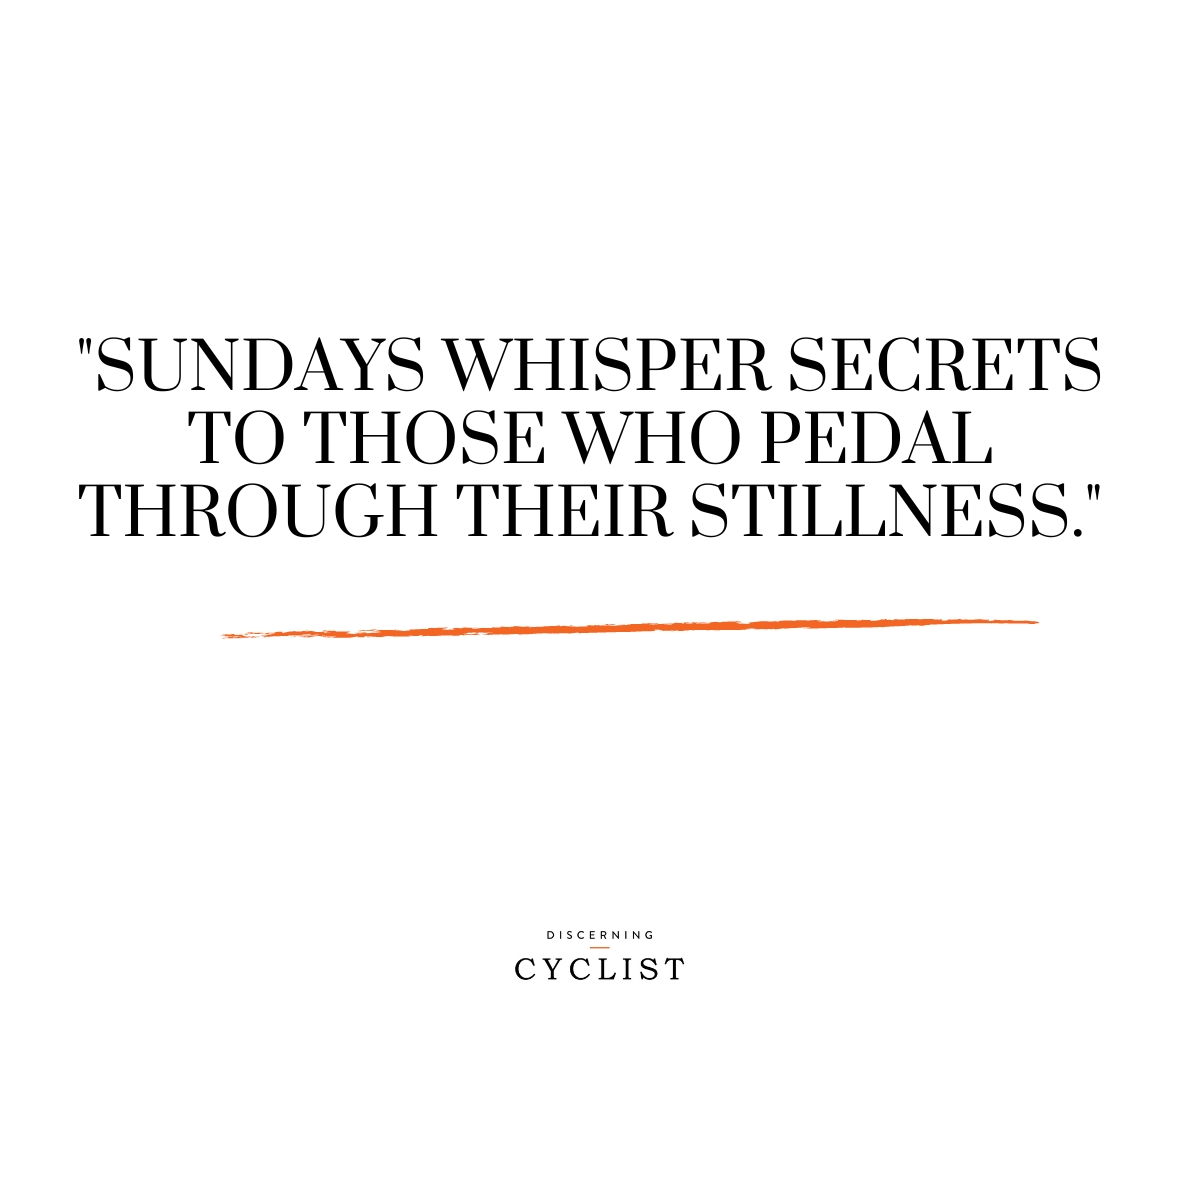 "Sundays whisper secrets to those who pedal through their stillness."